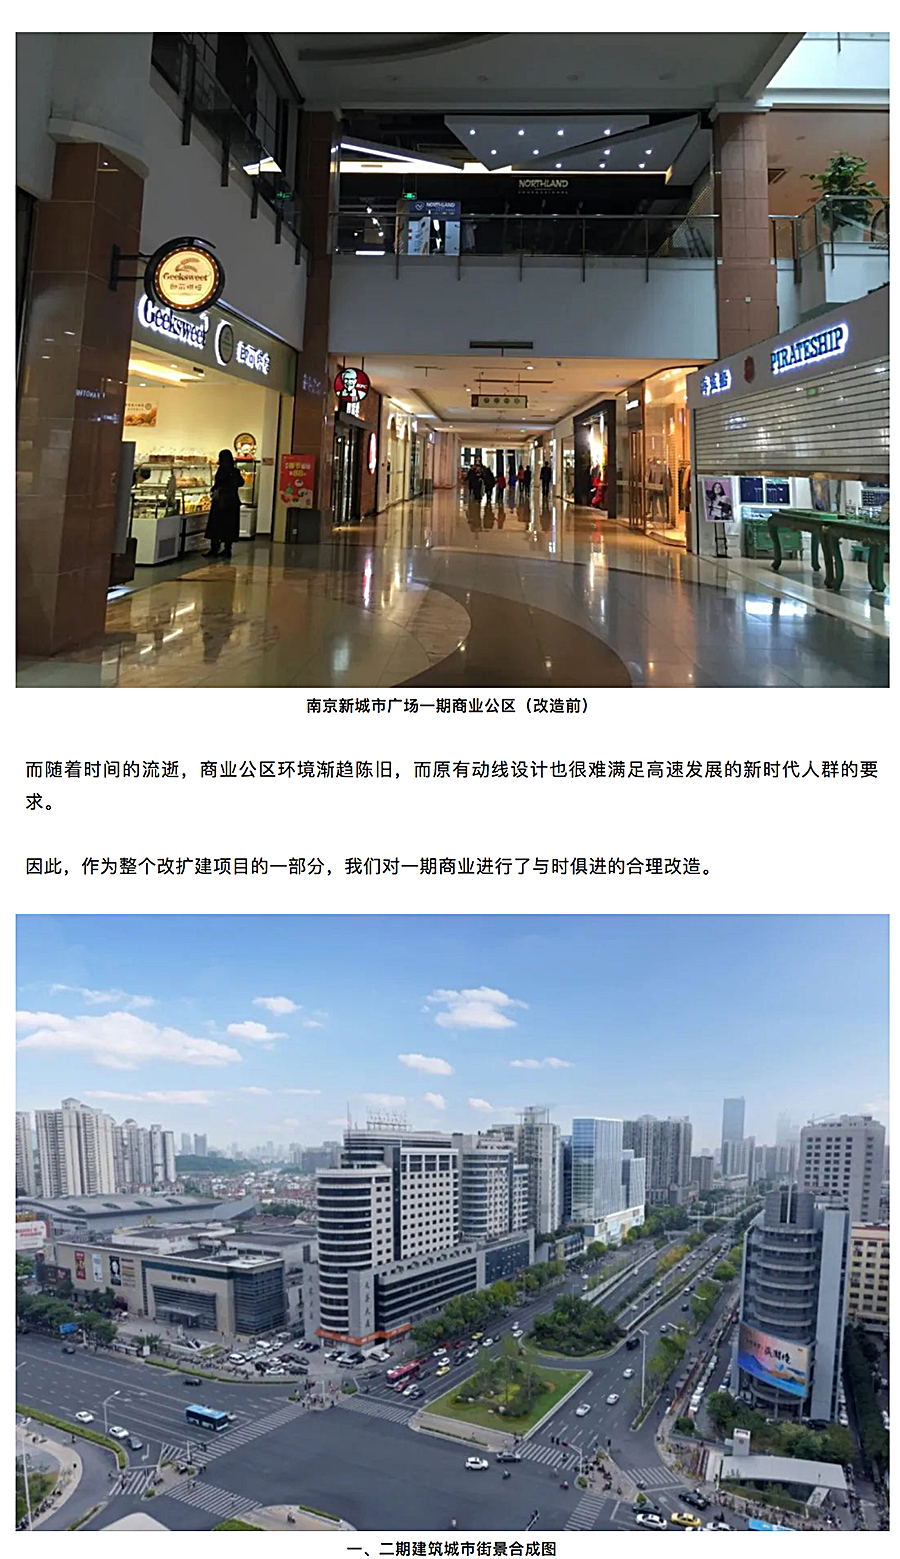 与时俱进的升级改造-_-南京龙江新城市广场一期商业改造_0002_图层-3.jpg